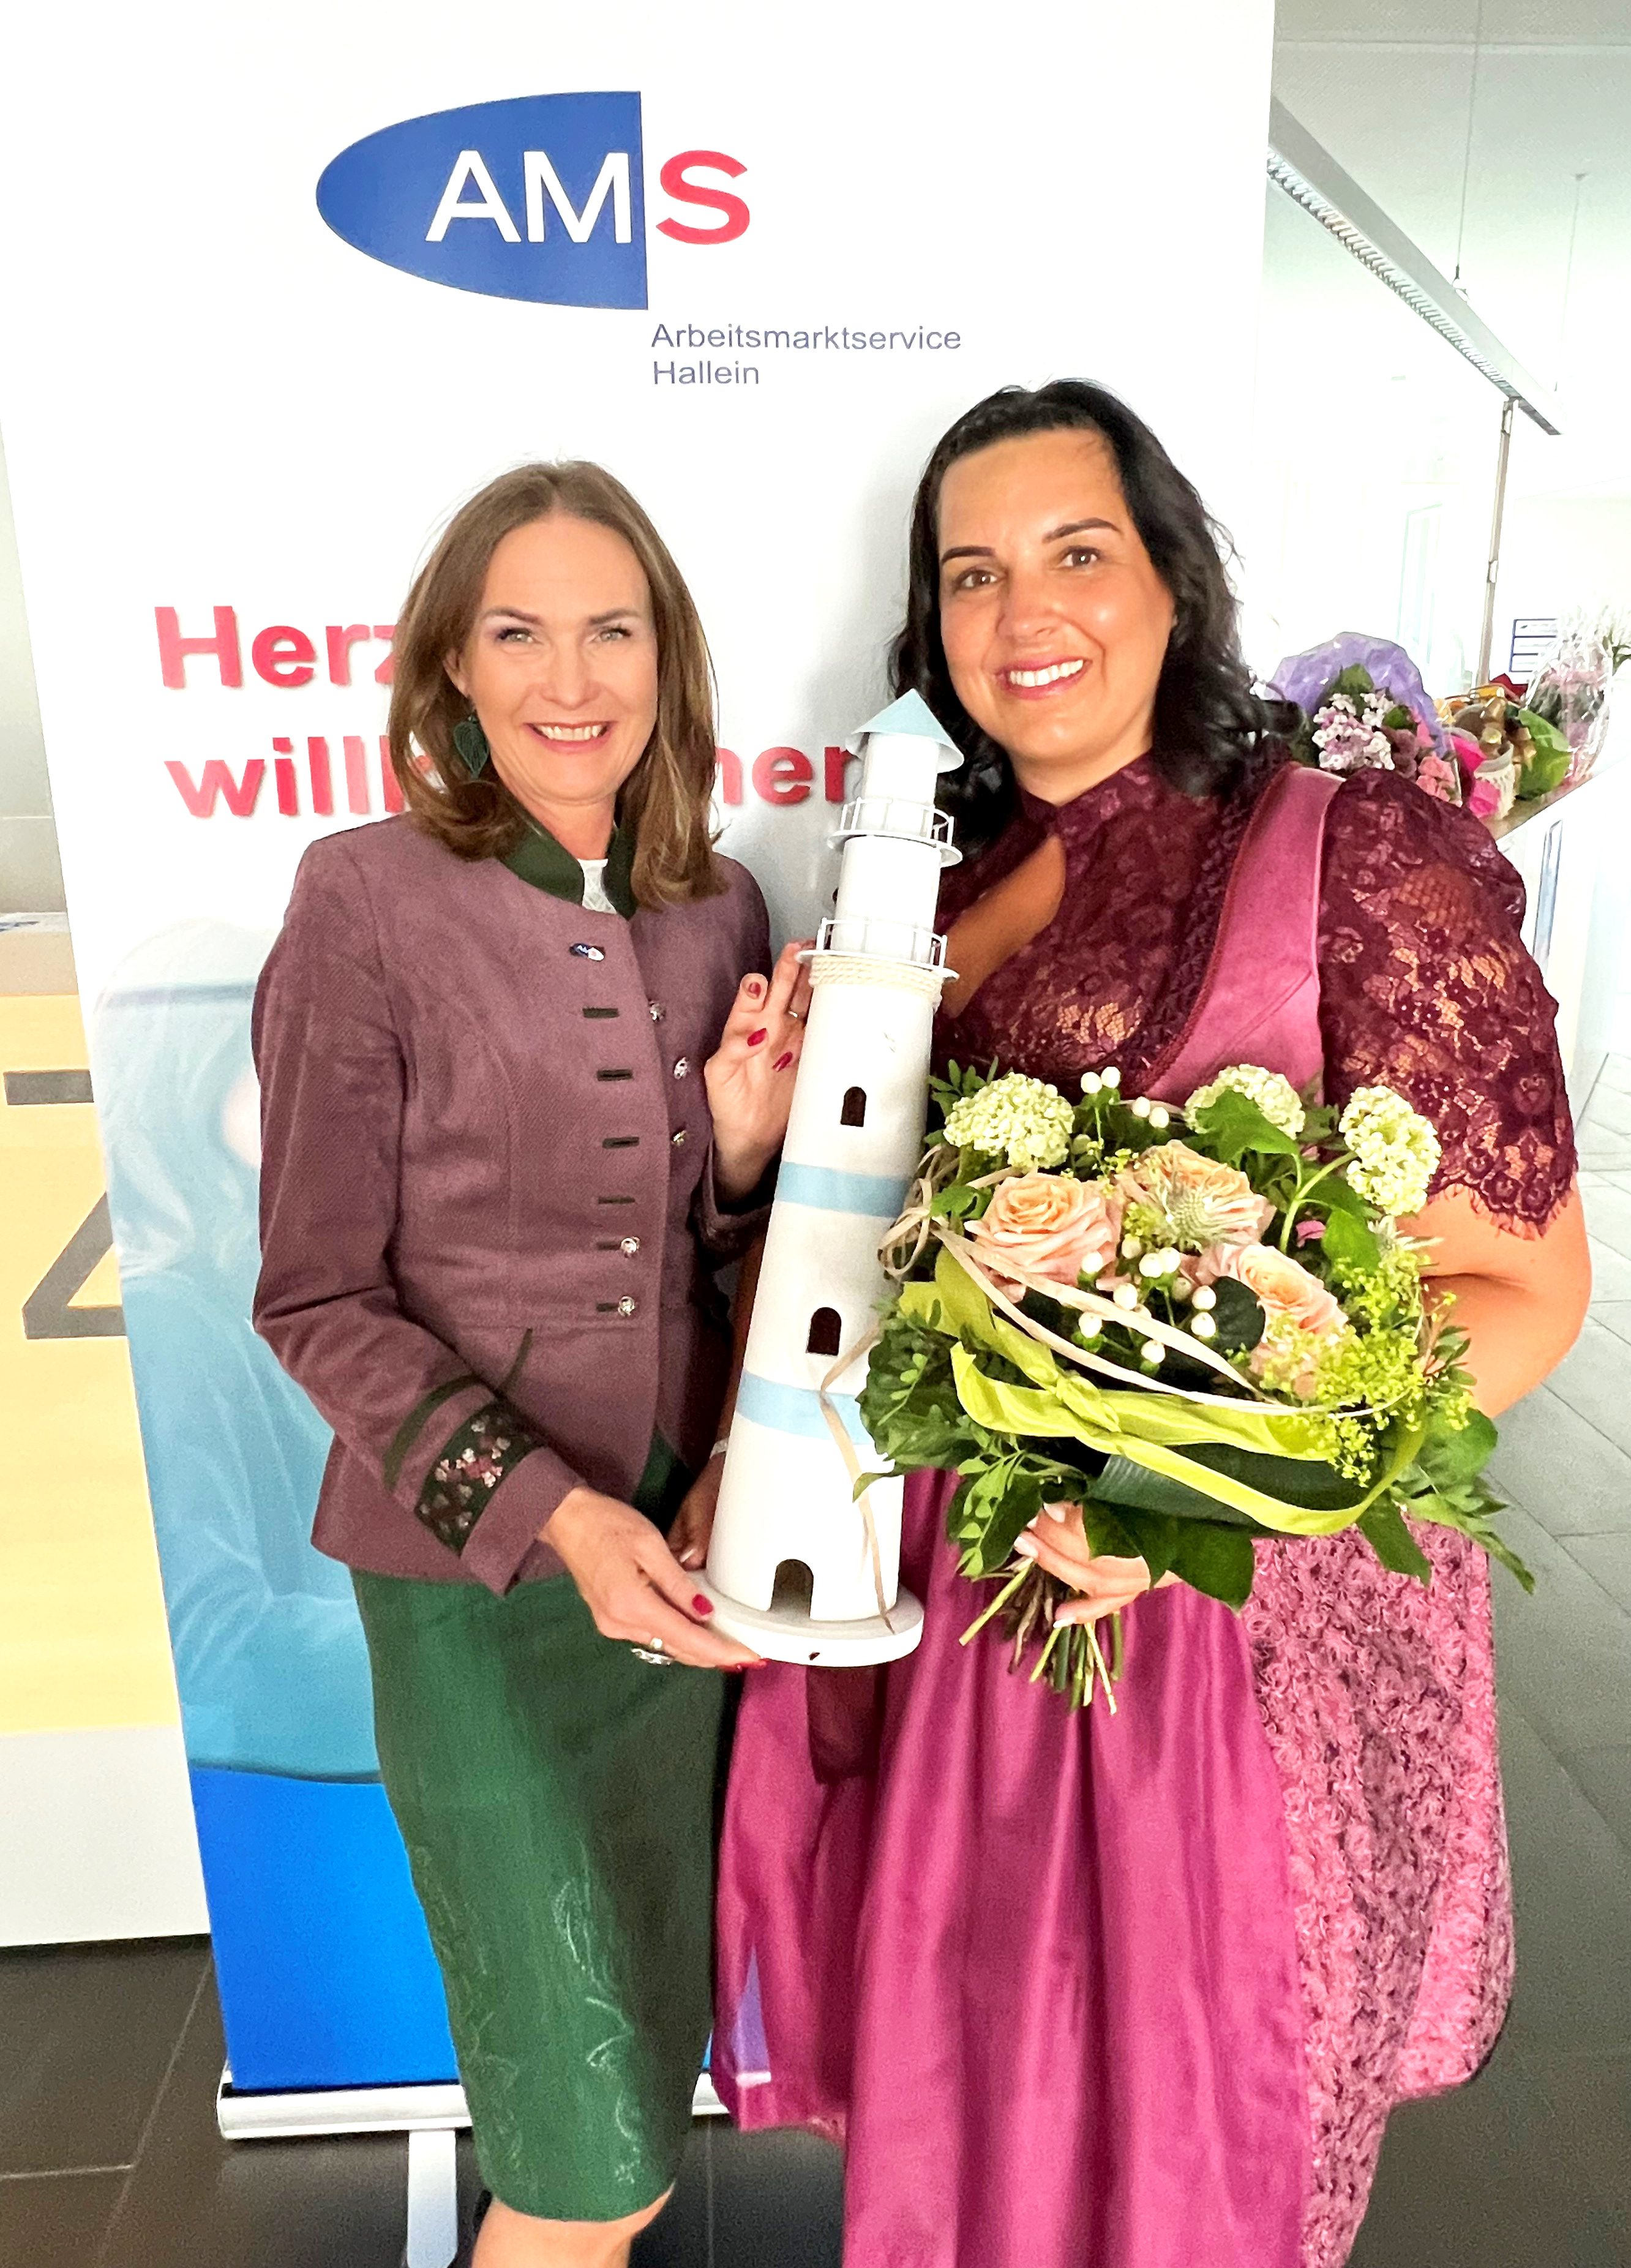 AMS Landesgeschäftsführerin Jacqueline Beyer (l.) mit Katrin Klimitsch (zukünftige Leiterin des AMS Hallein)